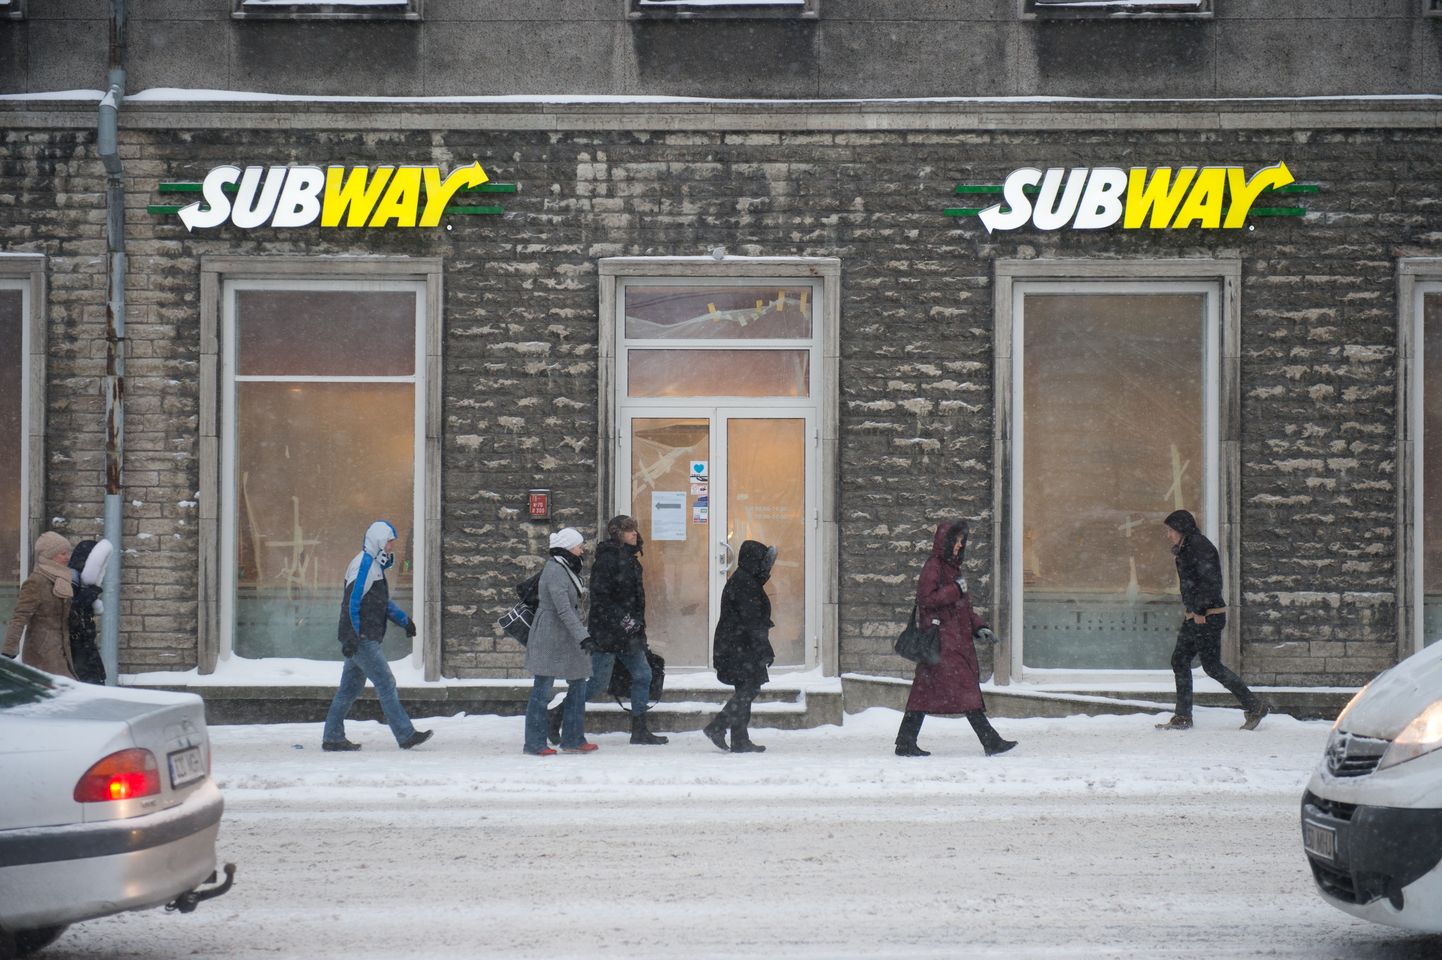 Subway kiirtoiduketi esimene pood Tallinnas Estonia puiesteel.